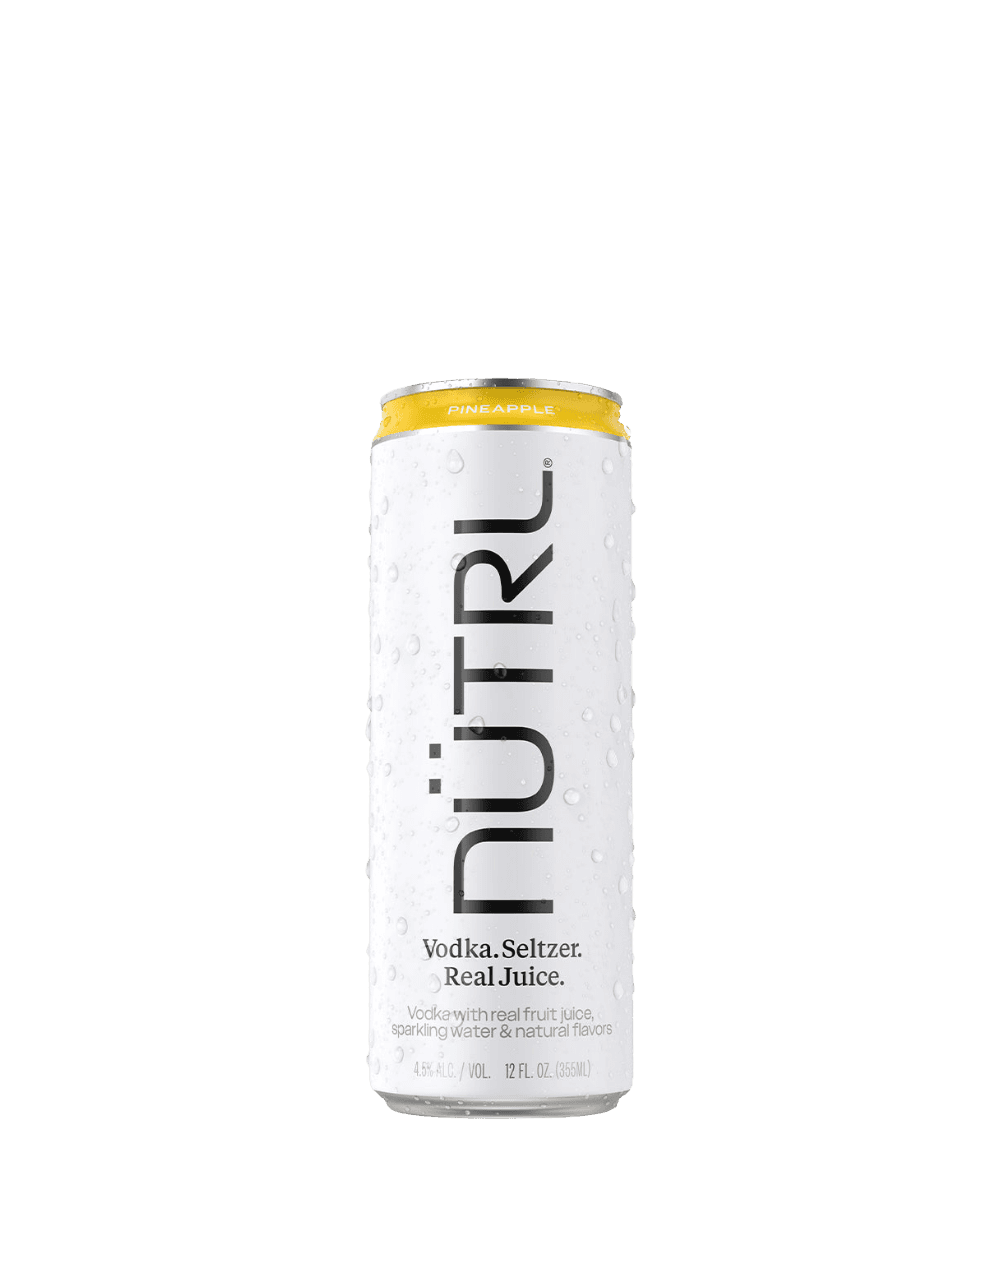 NUTRL Pineapple Vodka Seltzer